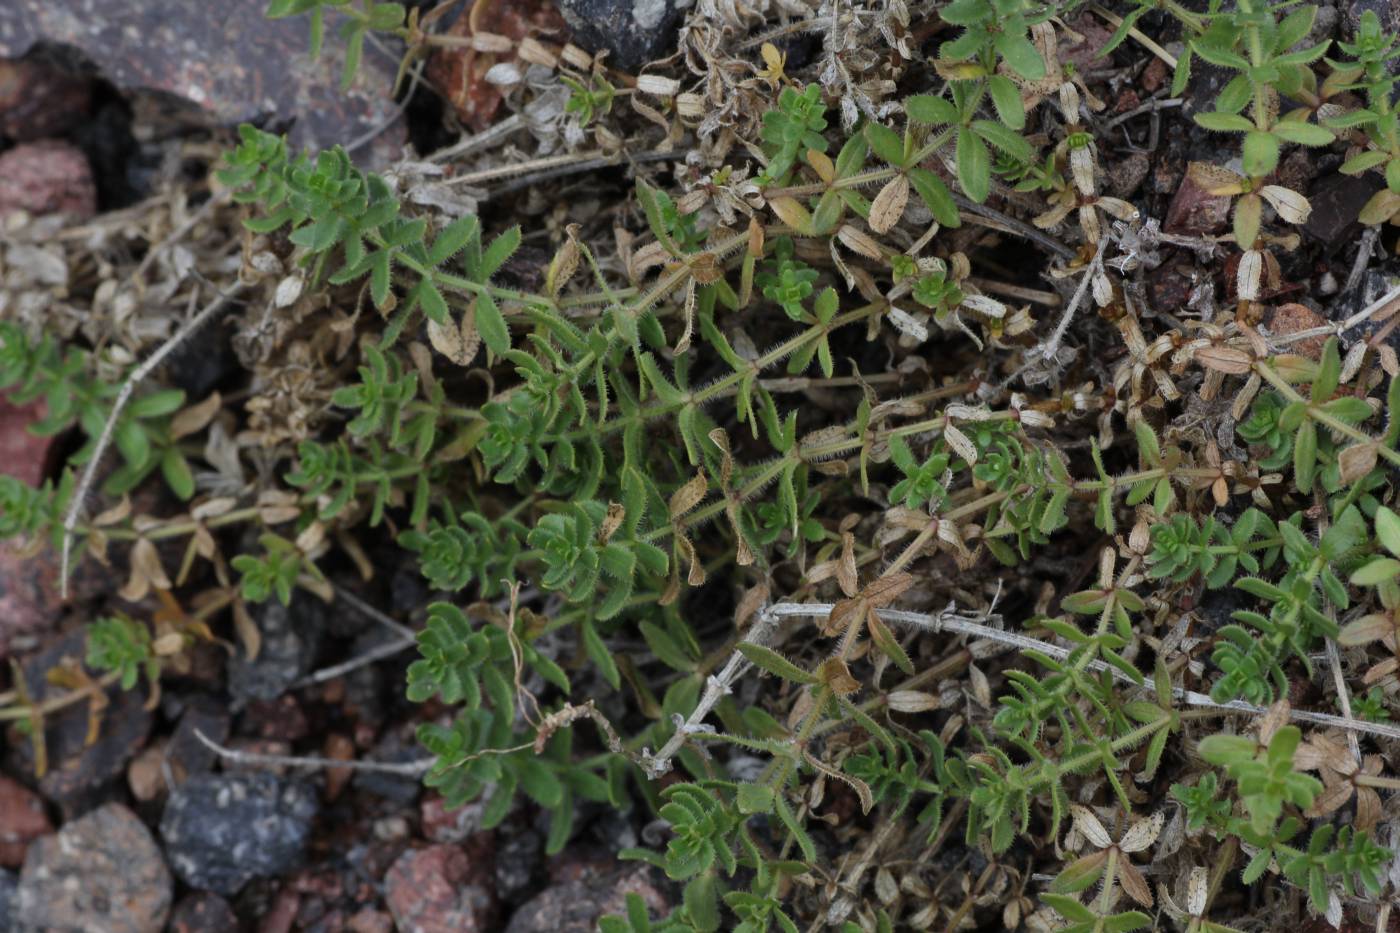 Image of genus Cruciata specimen.